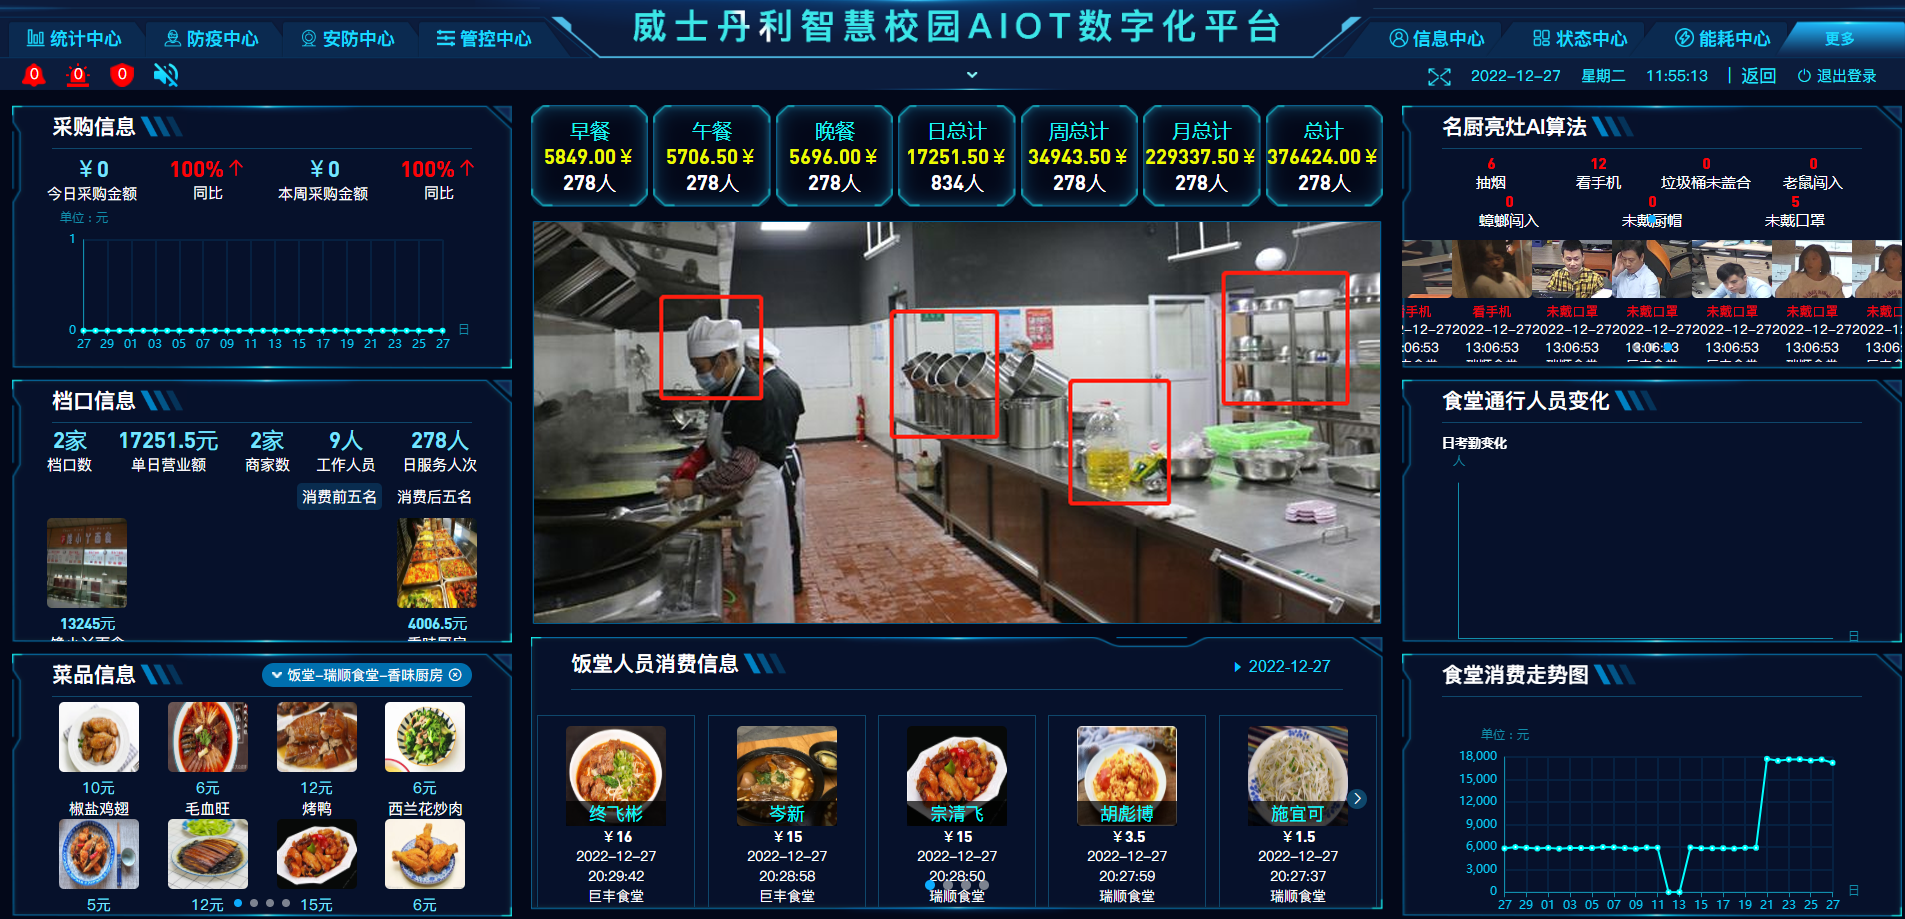 欧巴体育AIOT数字化平台助力镇江市教育局食堂升级